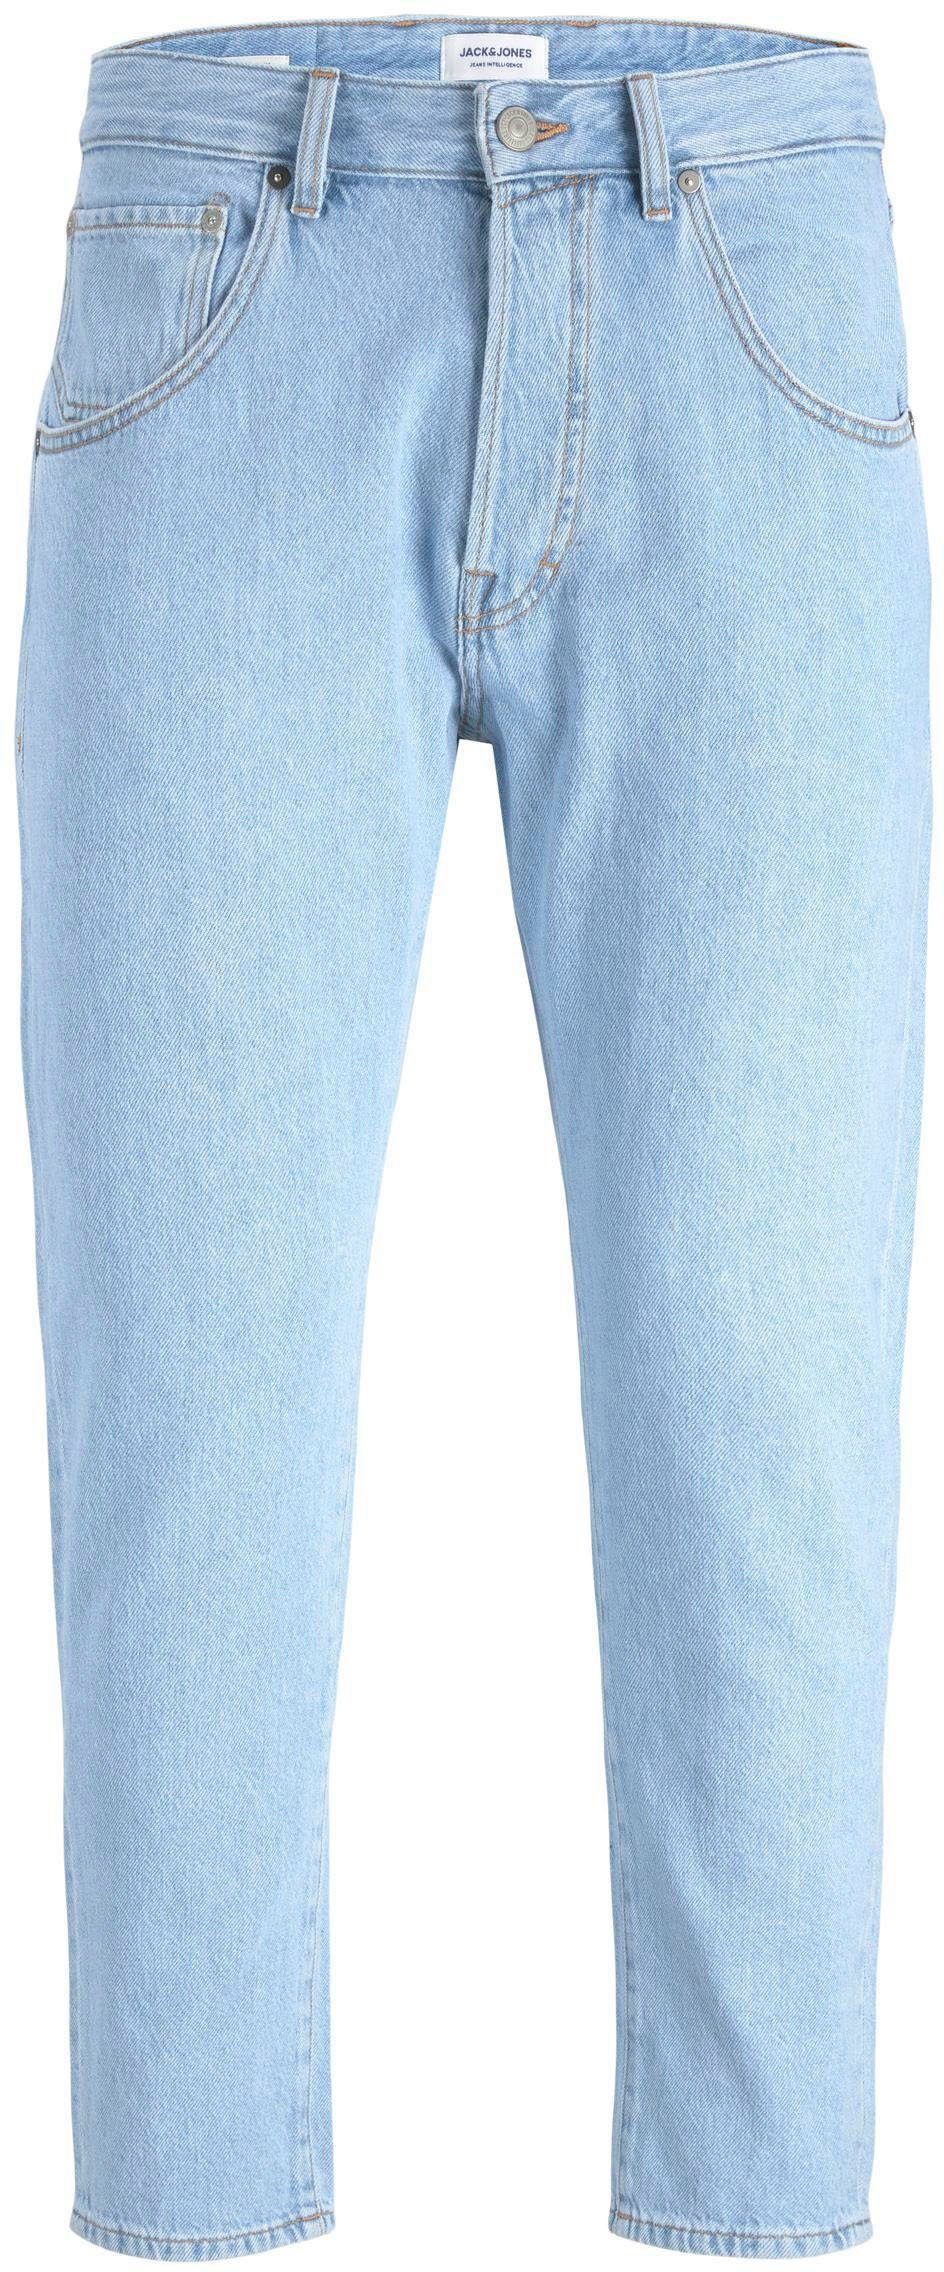 Jack & Jones Tapered-fit-Jeans CROPPED JJORIGINAL blue denim JJIFRANK